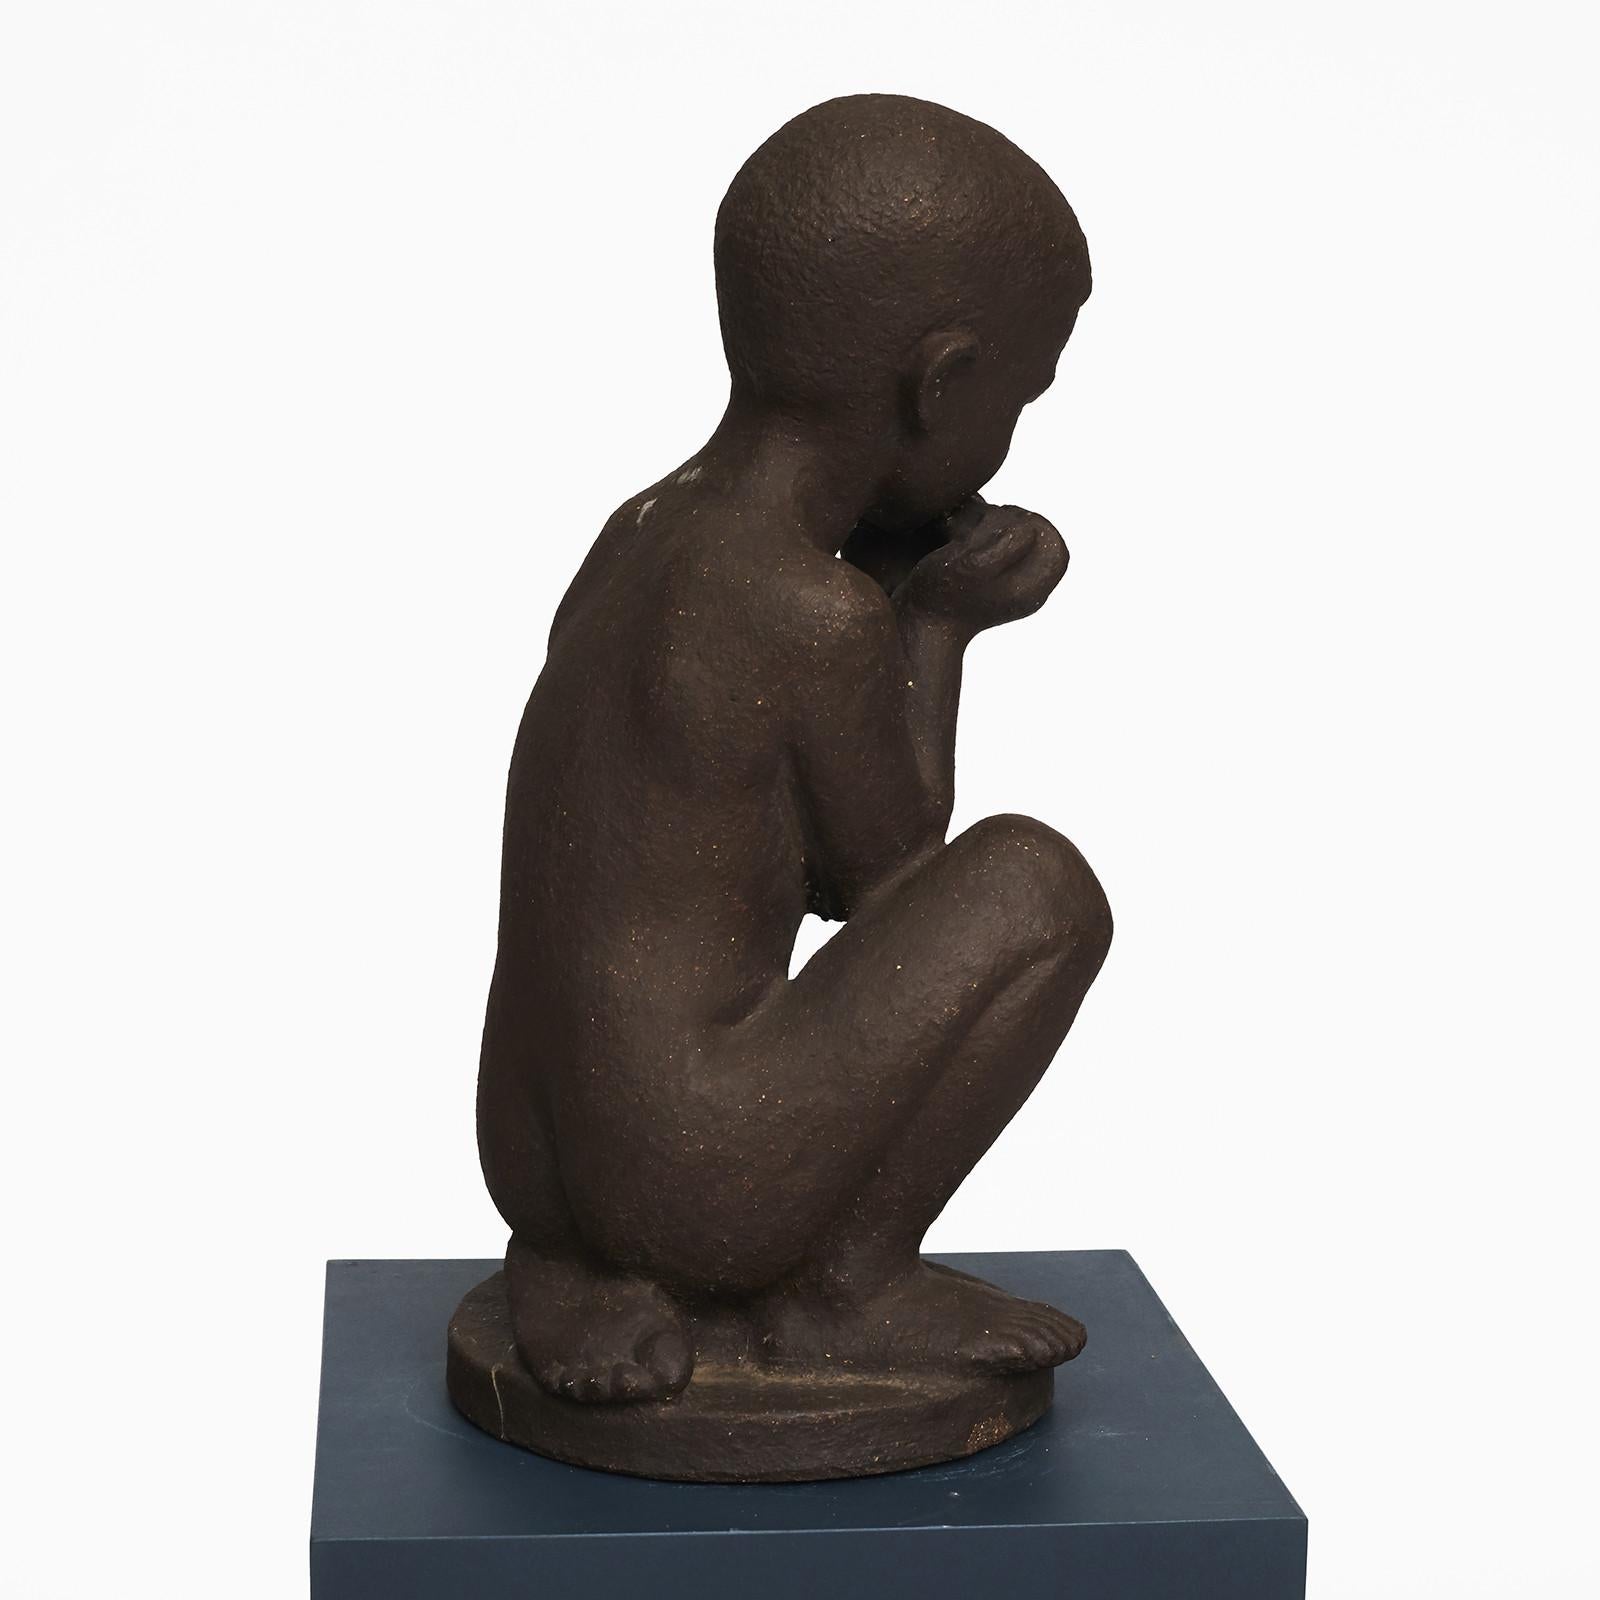 Grande figurine en céramique.
Conçu par Johannes Hansen (1903-1995) et fabriqué par l'usine de céramique Knabstrup au Danemark.
Garçon jouant de l'harmonica.
Les figurines sont faites d'argile chamottée foncée sans glaçure.
Présence d'une